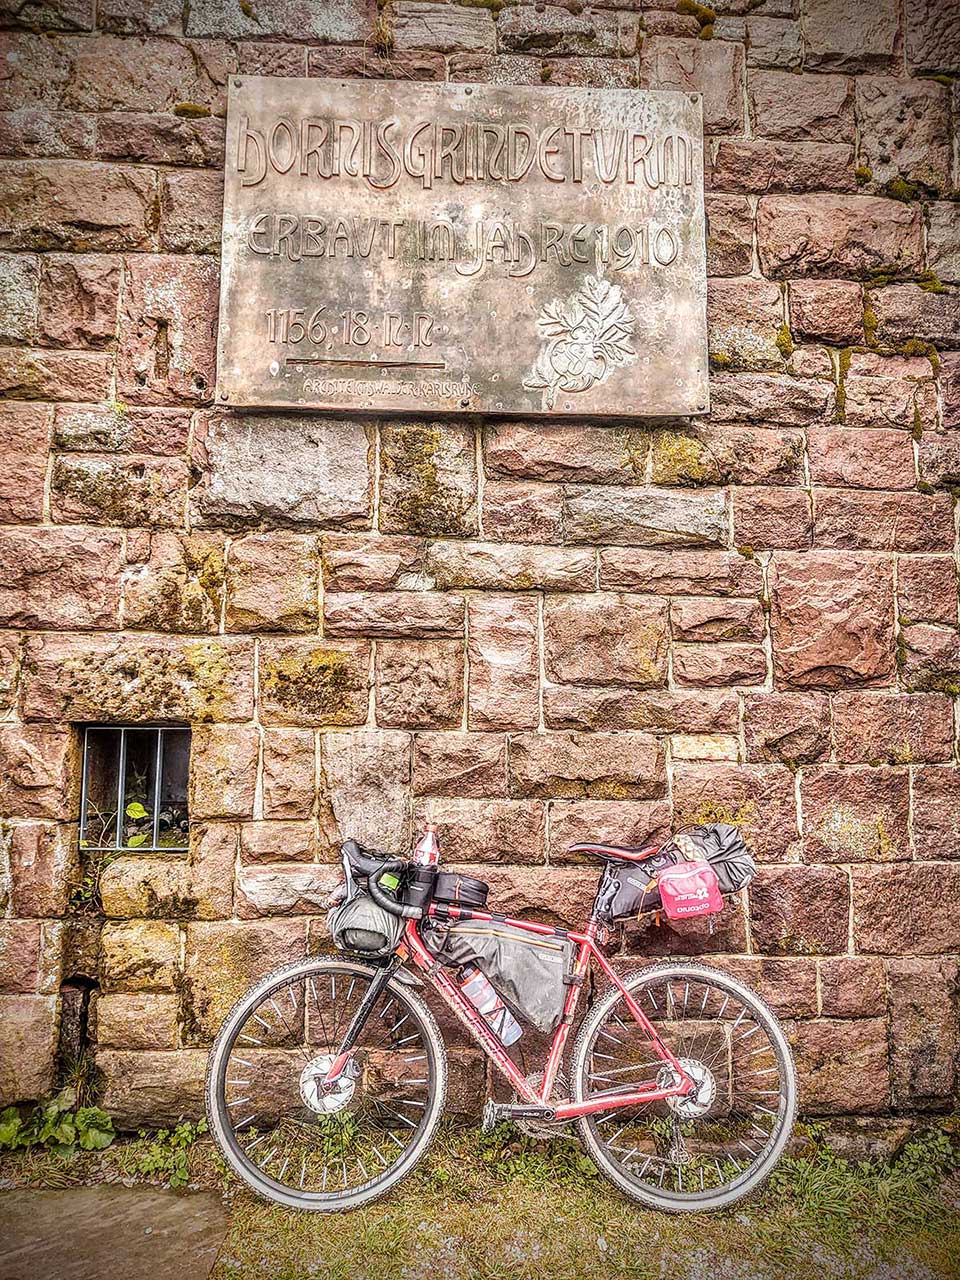 JobRad Moment von S. mit vollgepacktem Bike vor Steinquadermauer mit Plakette 